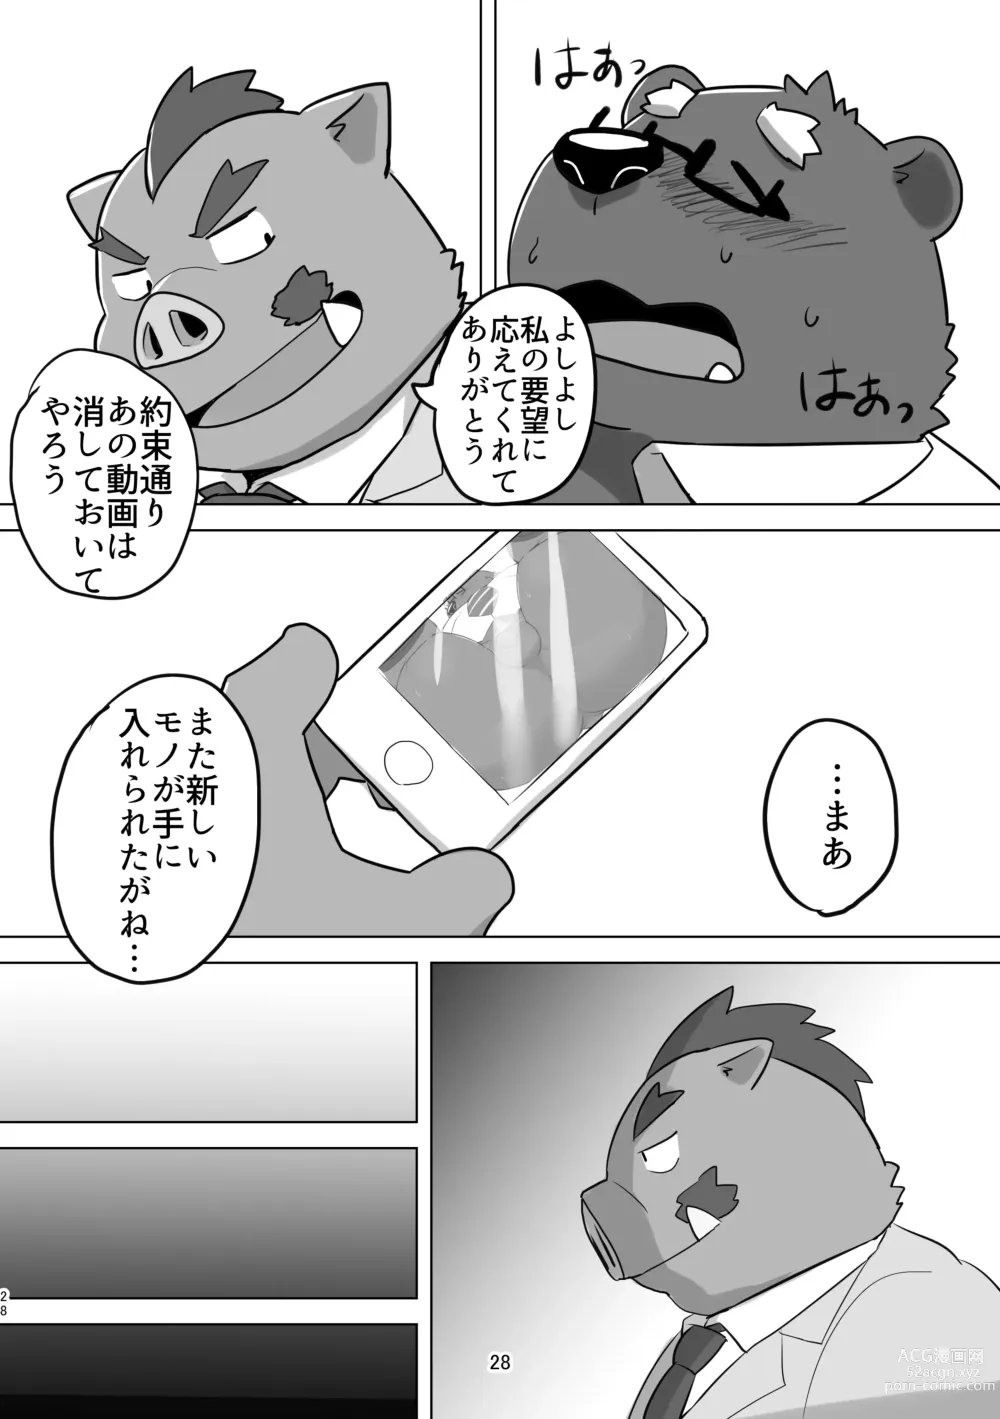 Page 28 of doujinshi KUMAPAPA 1